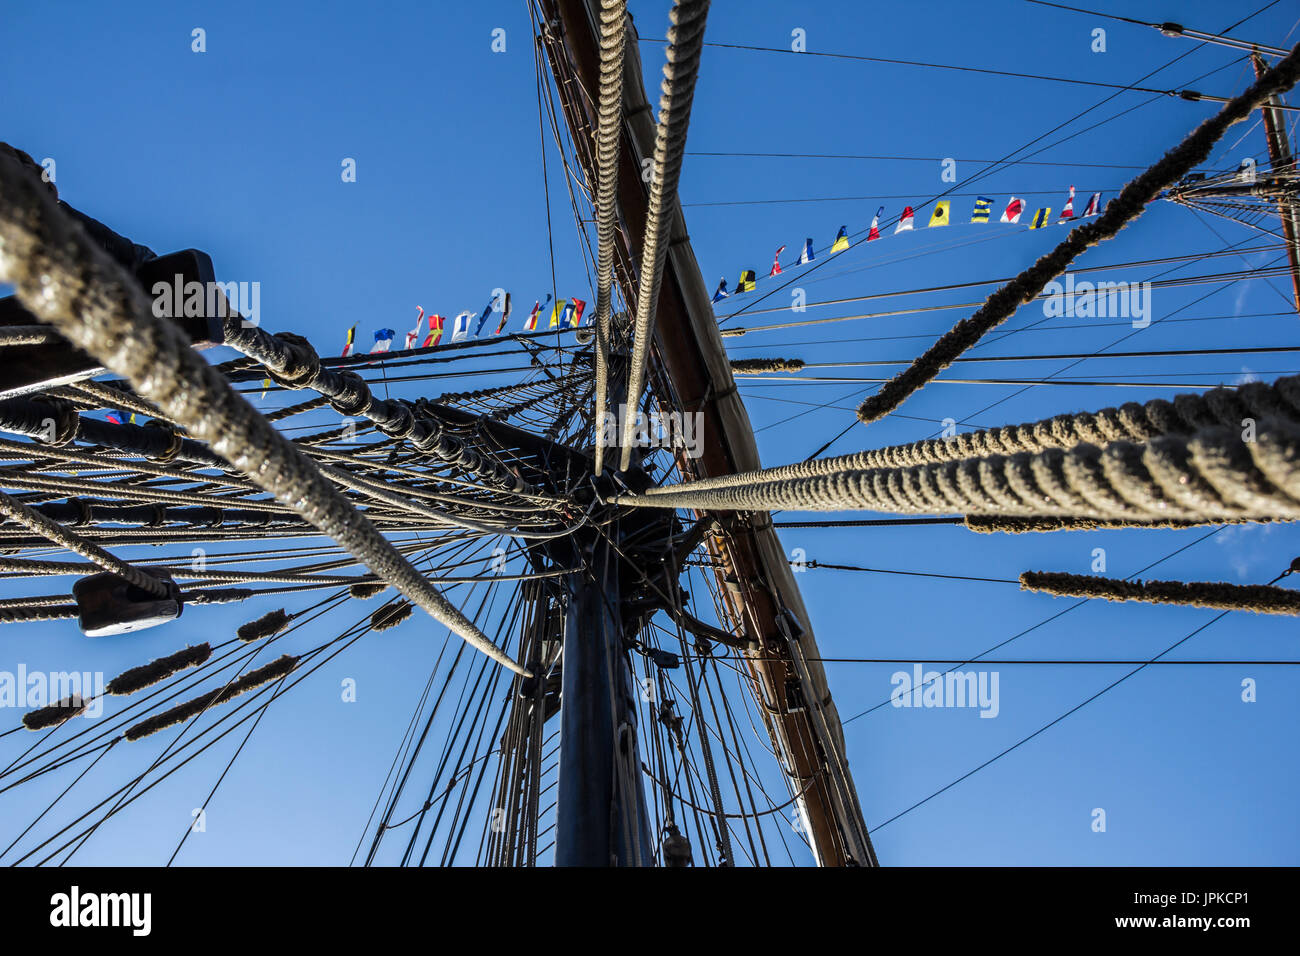 Parte nautico di una barca o un grande vecchio veliero con cordicelle, rigging, vela, piloni, nodi, segnale bandiere blu cielo Foto Stock